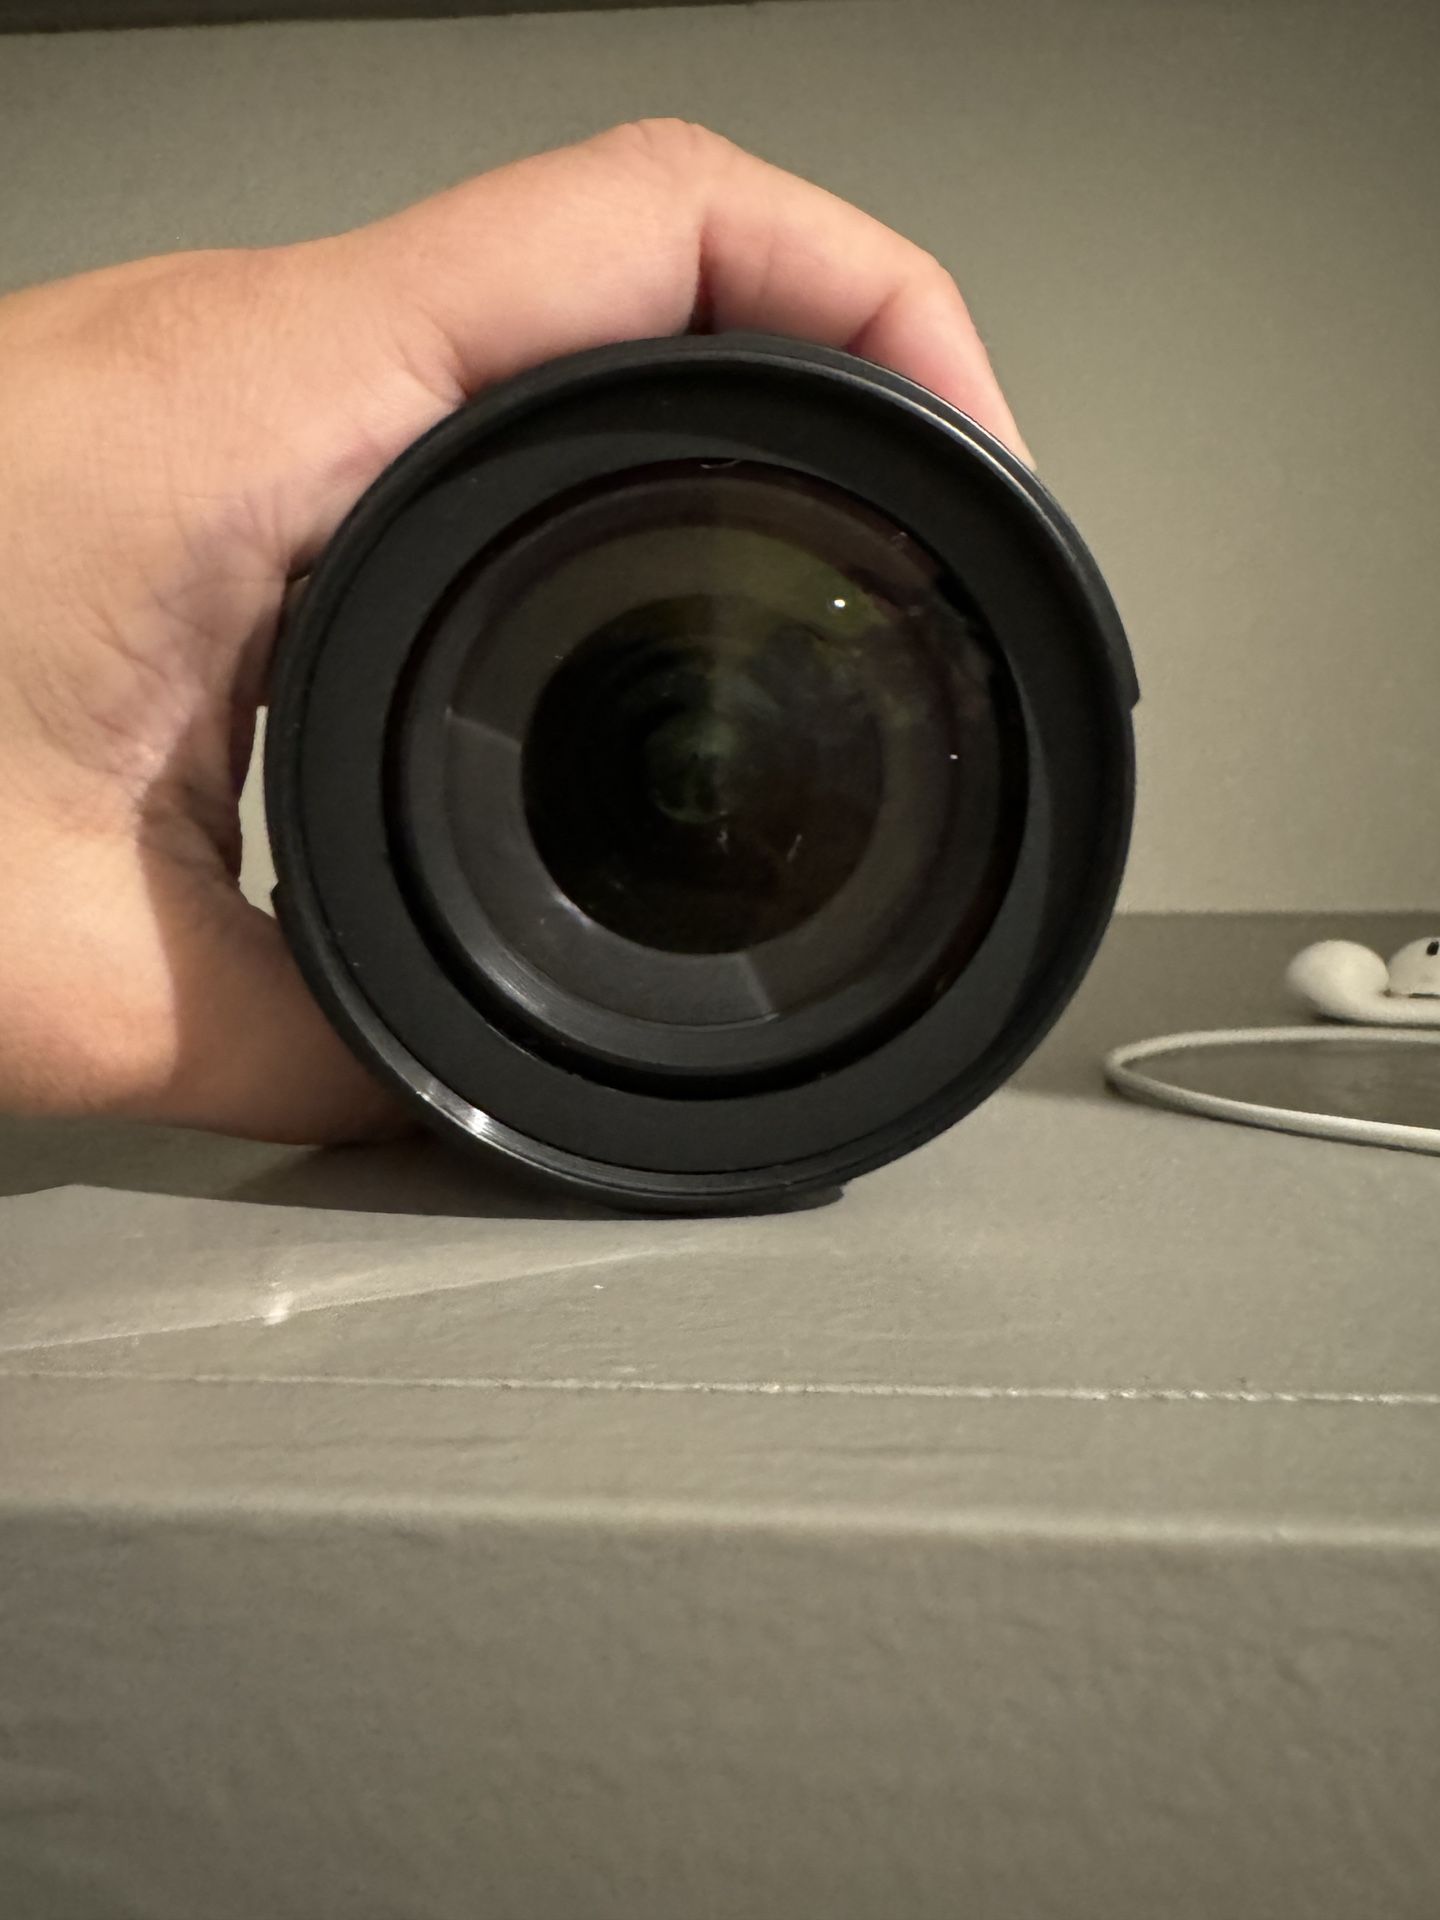 Nikon AF-S DX Nikkor 18-105mm f/3.5-5.6G ED VR lens